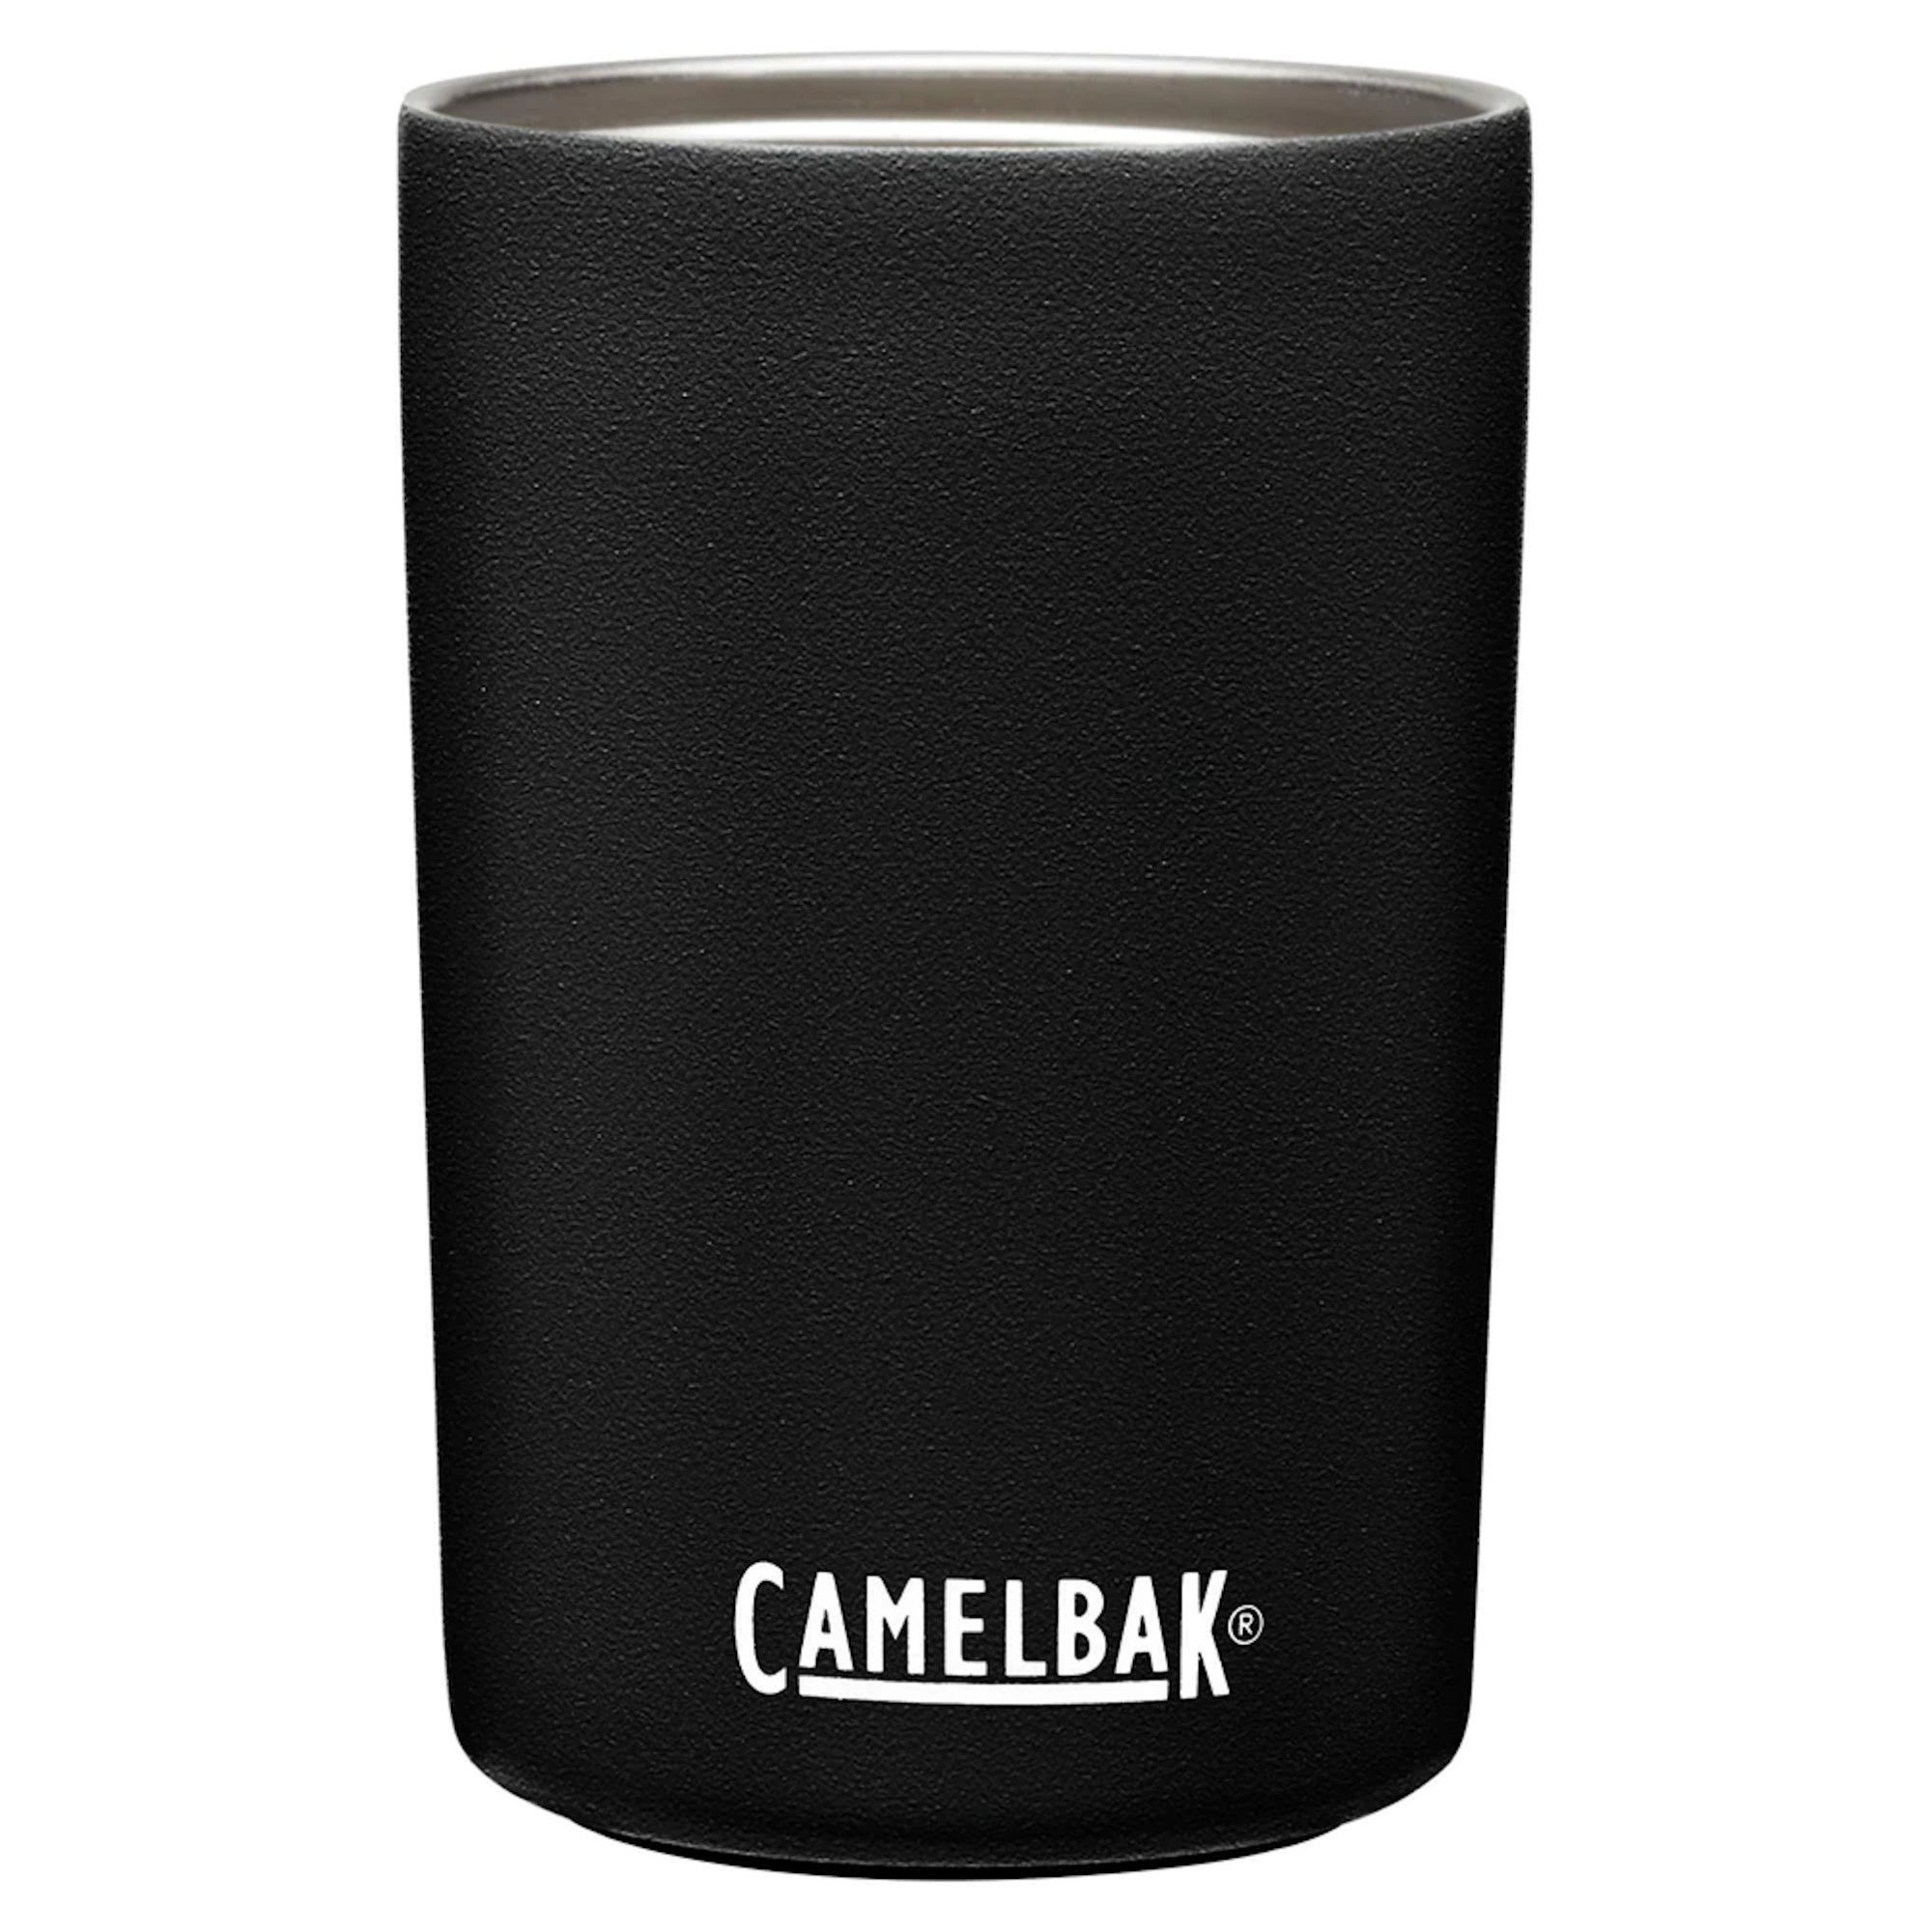 Thermosbecher Thermoflasche Camelbak weiss-schwarz isolierte Trinkbecher Trinkflasche MultiBev Edelstahl